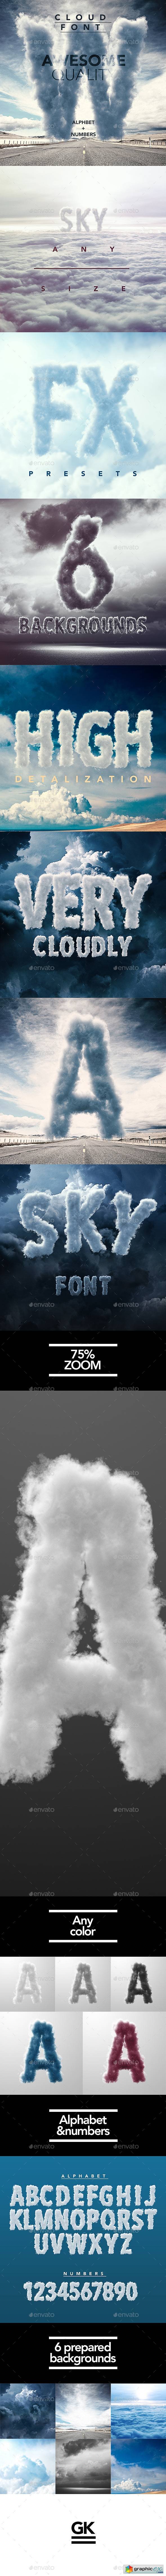 3D Sky / Cloud Font Mock Up